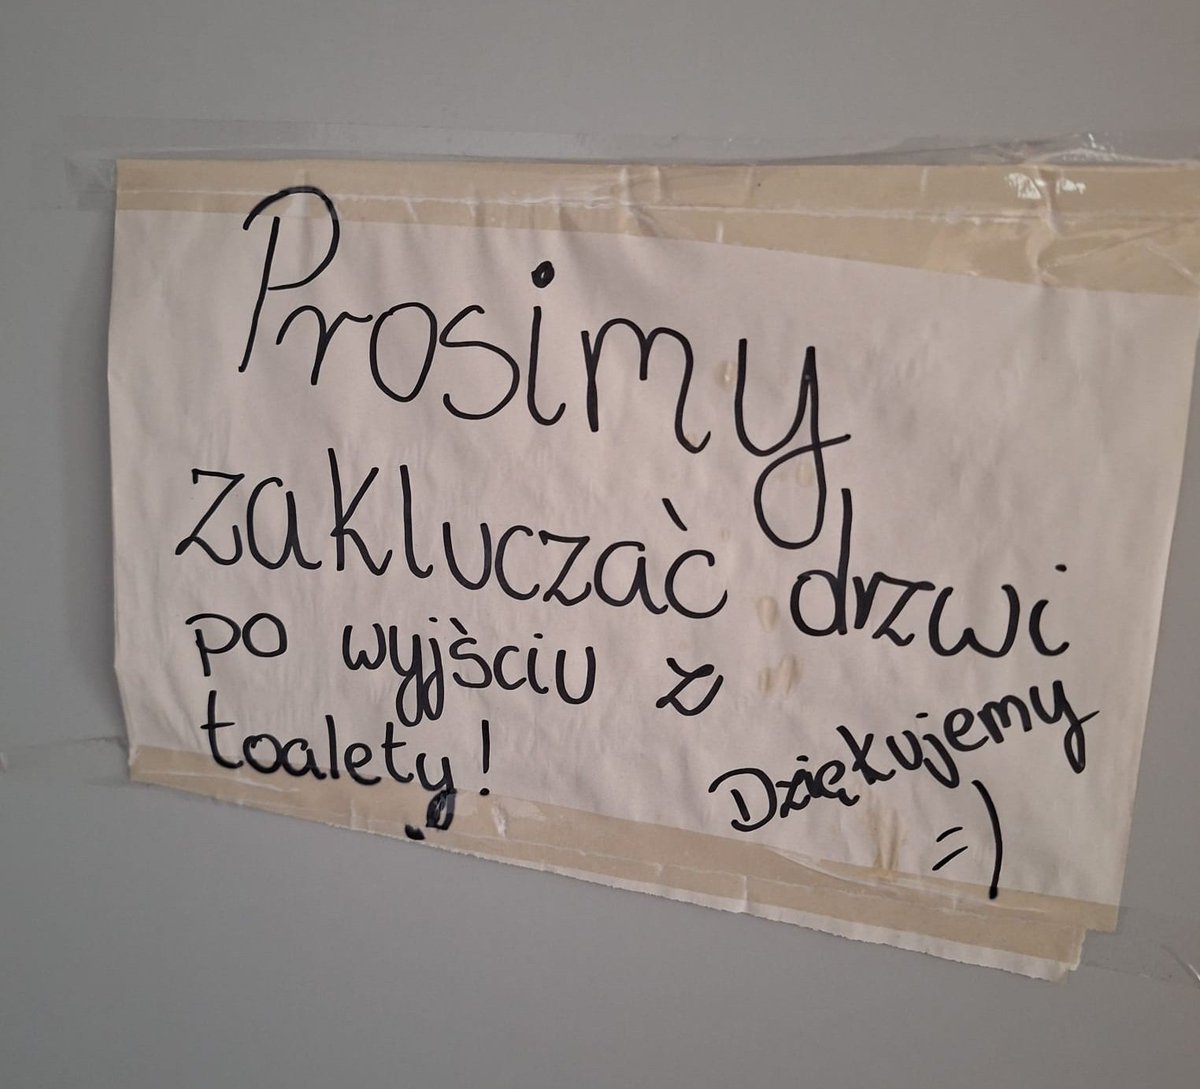 'Zaklucz drzwi do chaty, a w windzie naduś parter' 😉 - gwara poznańska wiecznie żywa! Na zdjęciu toaleta w Opalenicy, teraz: